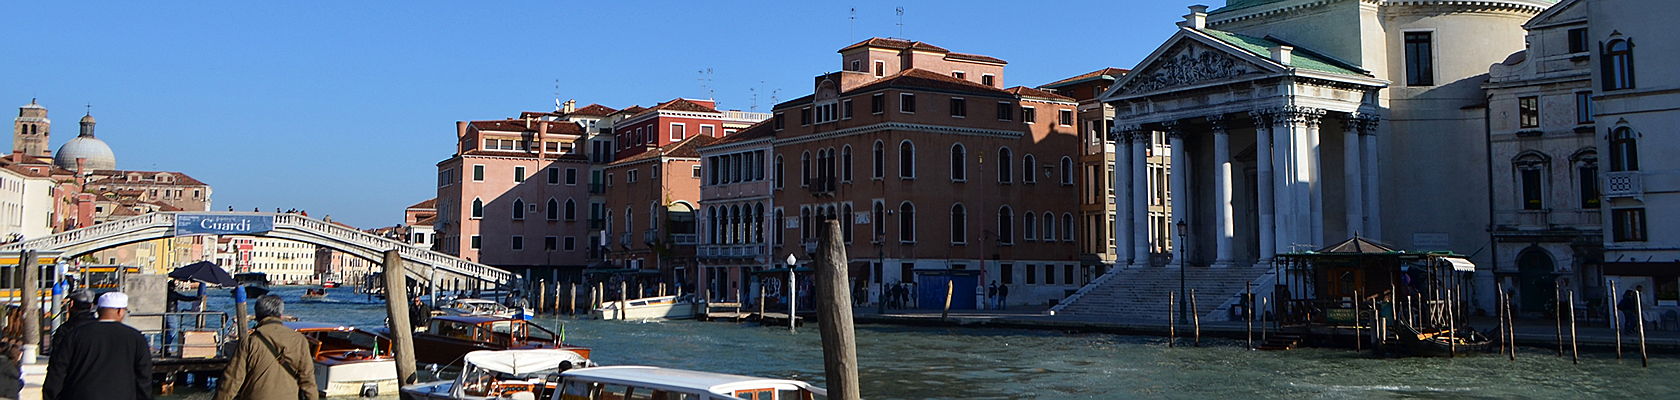  Venise
- case-in-vendita-santa-croce-venezia.jpg